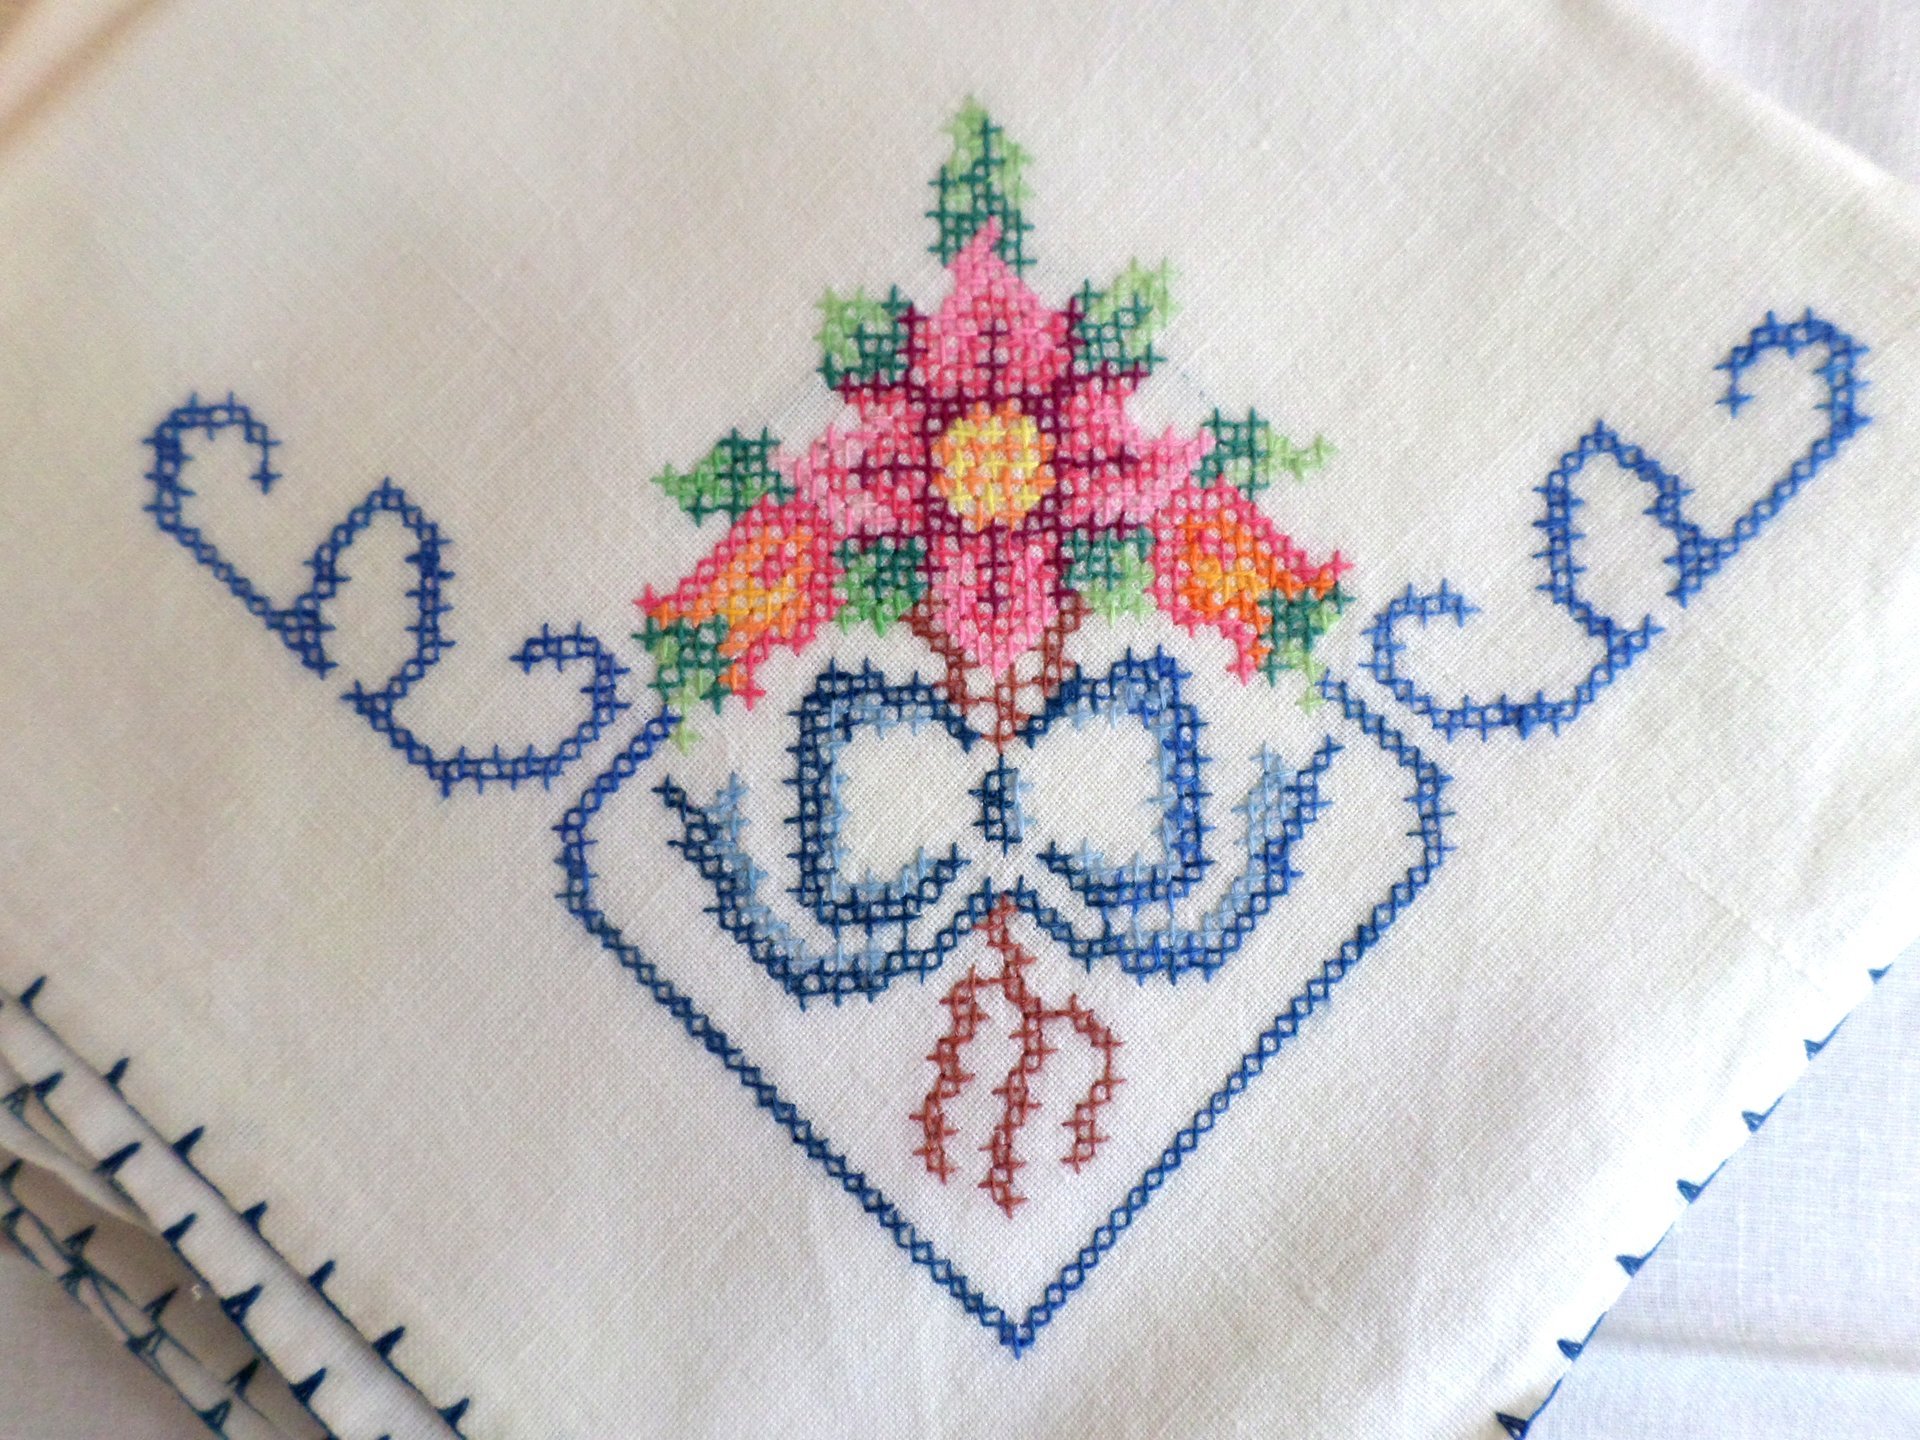 Vintage Hand Embroidered Linen Napkins, Set of 11